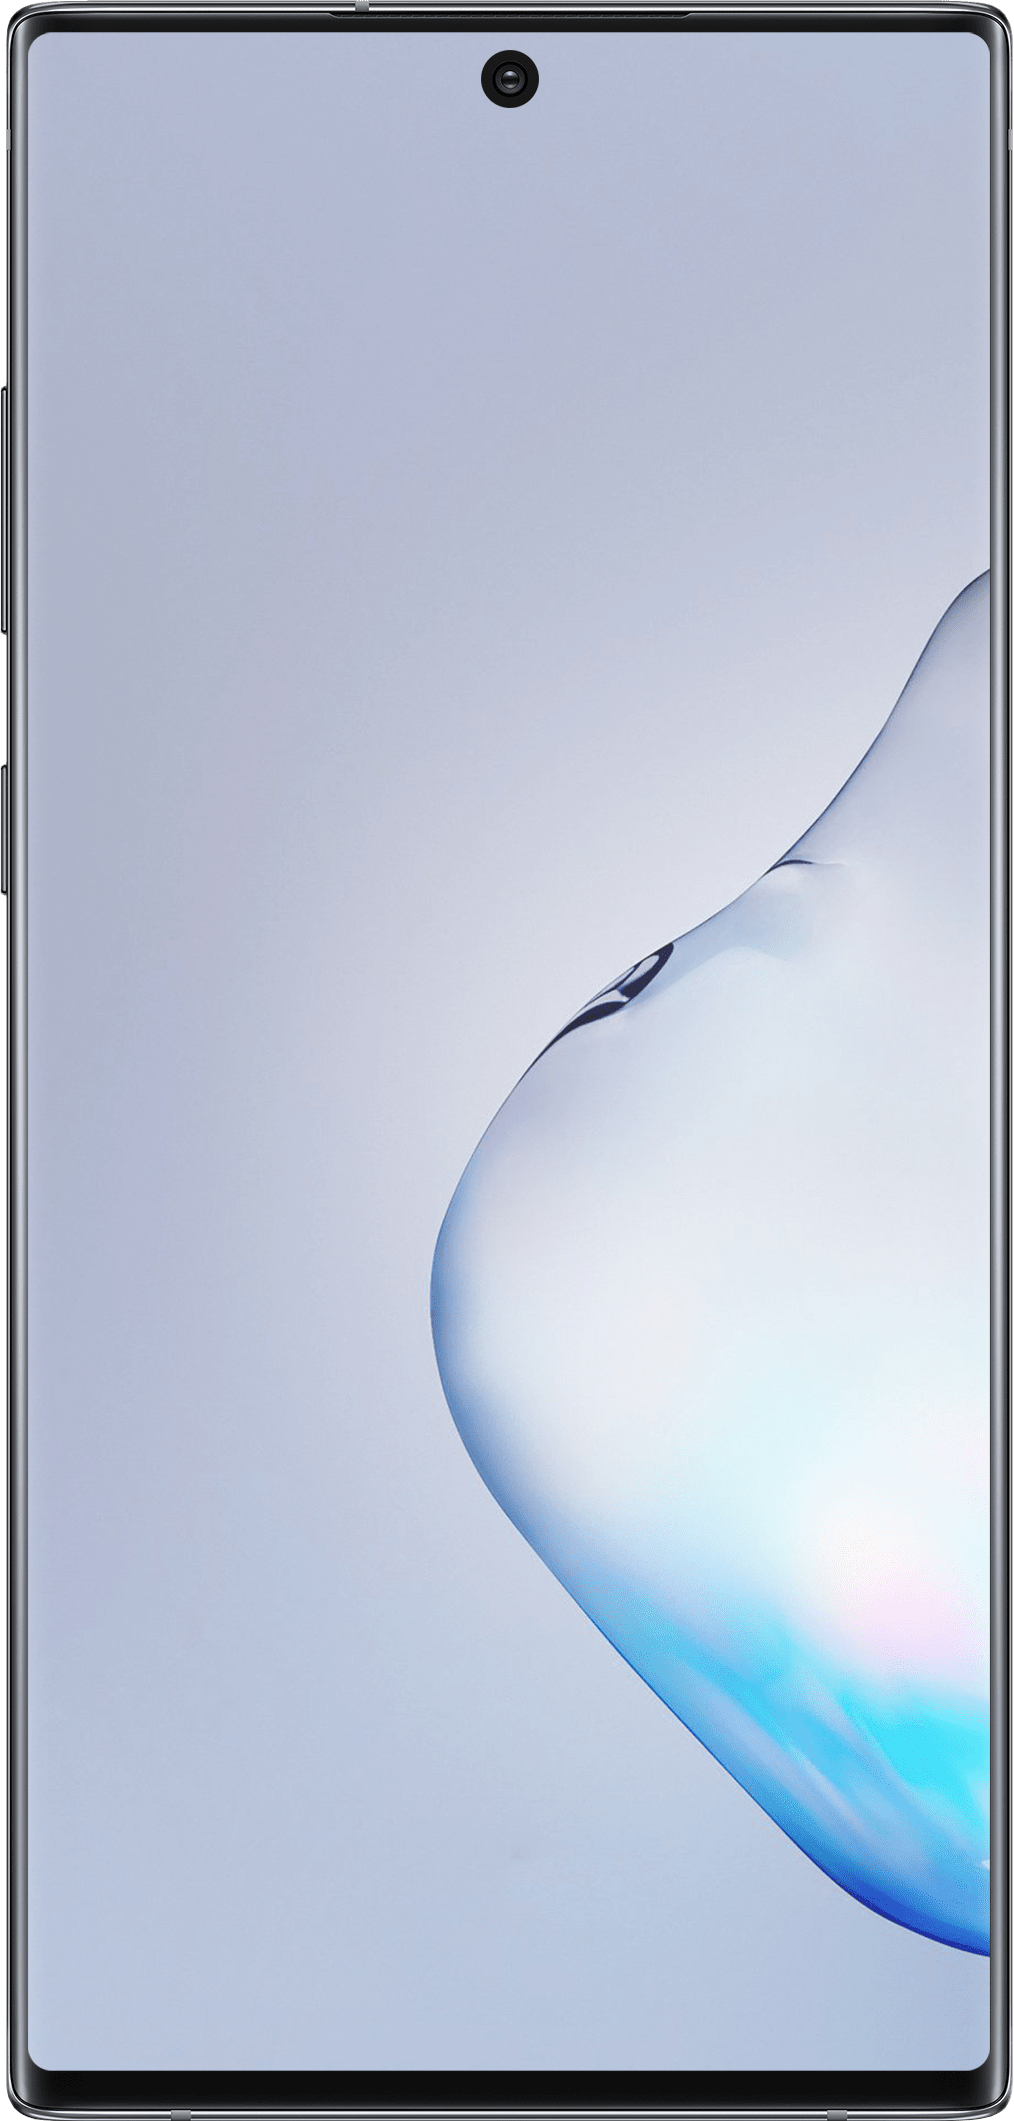 Troca de Vidro Samsung Note 10
Para que a troca de vidro possa ser realizada, é importante que a tela do cliente esteja totalmente operacional, acendendo, com touch respondendo e sem manchas.
Exceções: Pequenas manchas que não interferem na utilização permitem que o processo seja realizado. 
